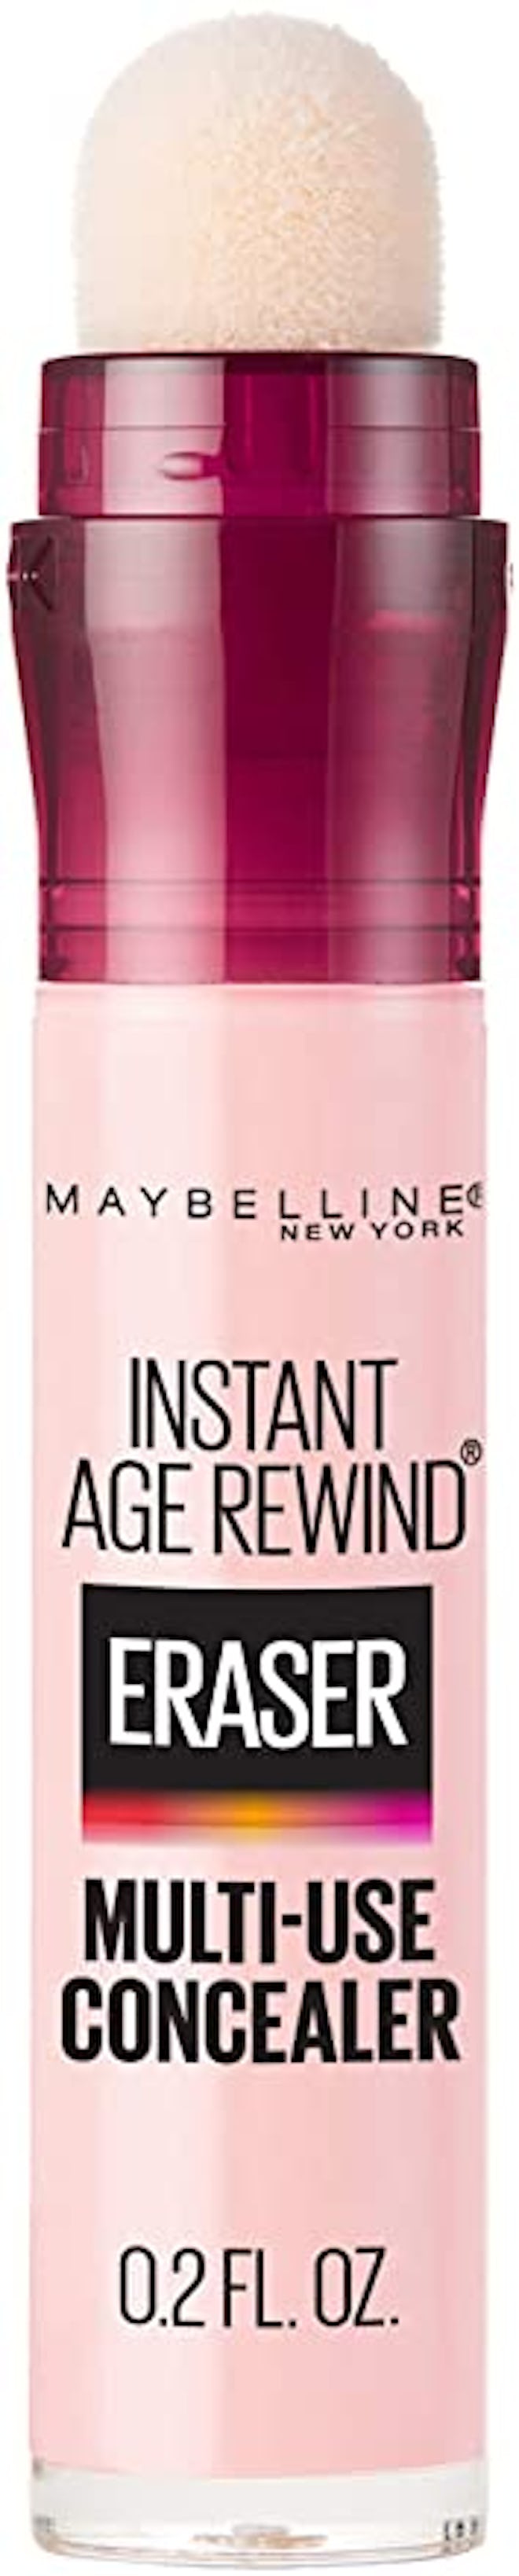 Maybelline Instant Age Rewind Eraser